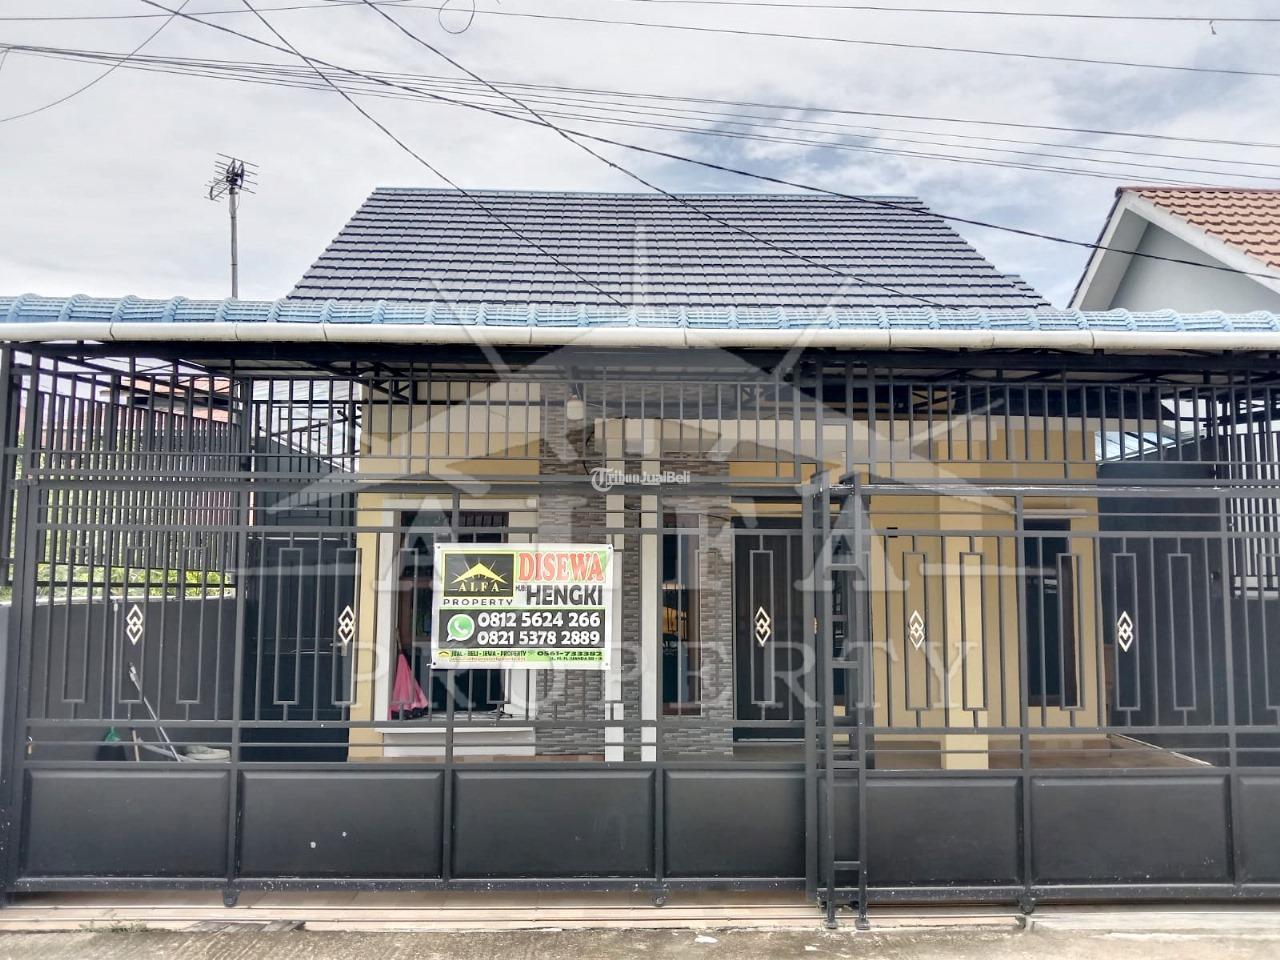 Disewakan Rumah Luas 75x11m di Karet Mulia Siap Huni - Pontianak Kalimantan Barat 